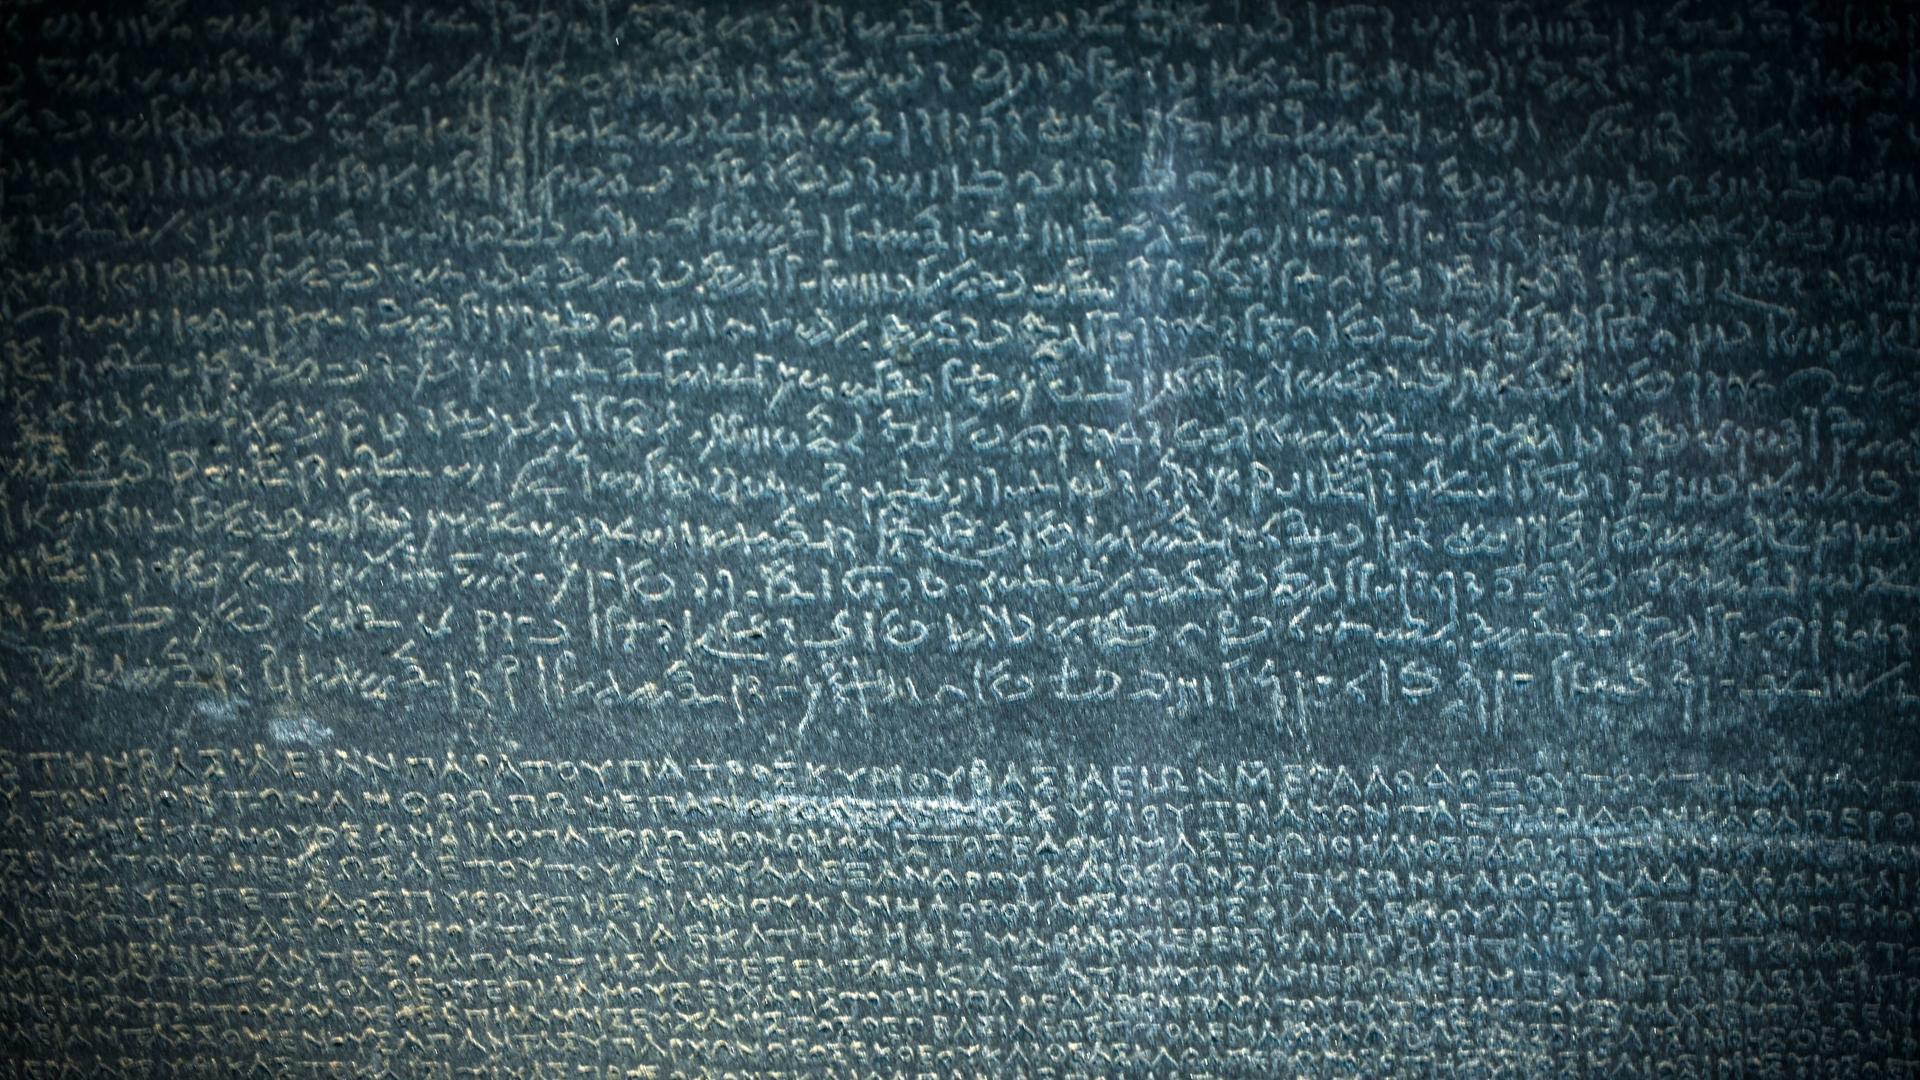 Eine Stein mit Buchstaben. Es ist der Stein von Rosetta aus dem alten Ägypten.